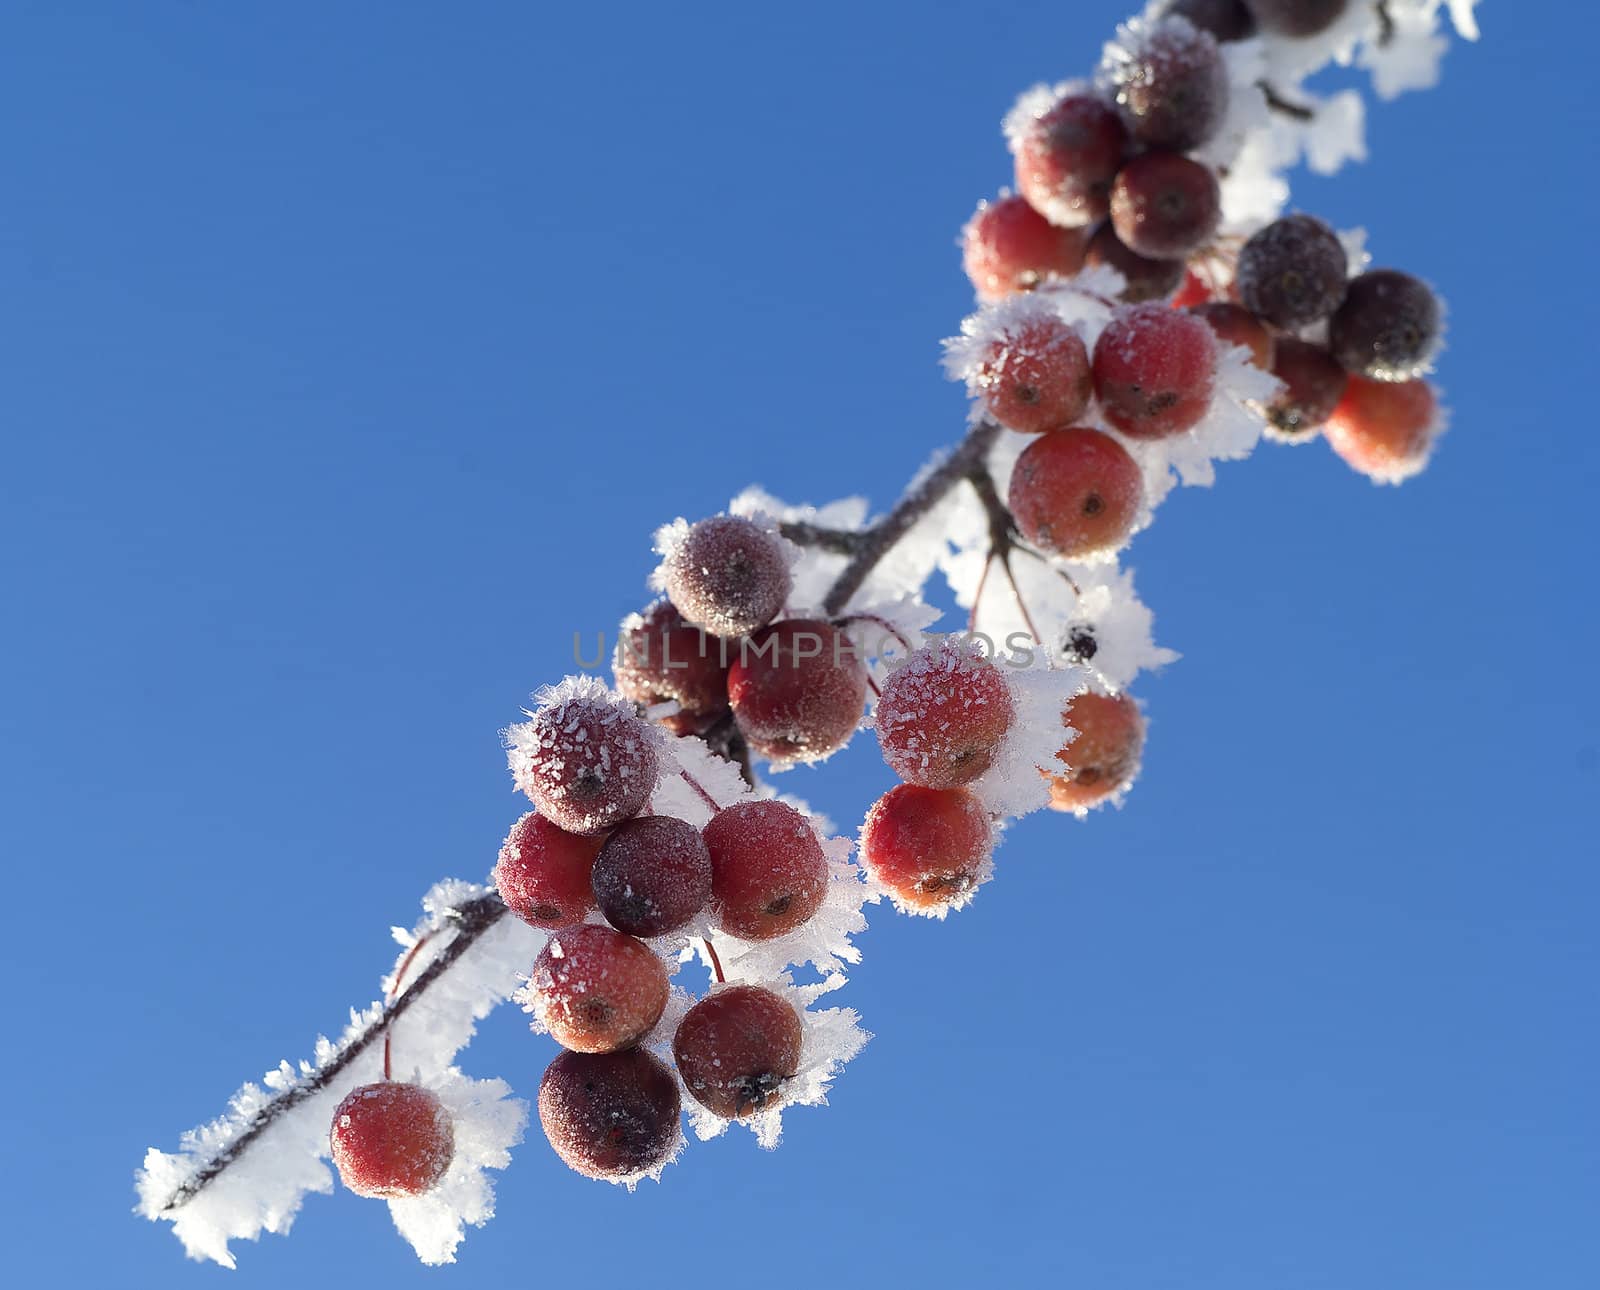 Frozen berries by gemenacom